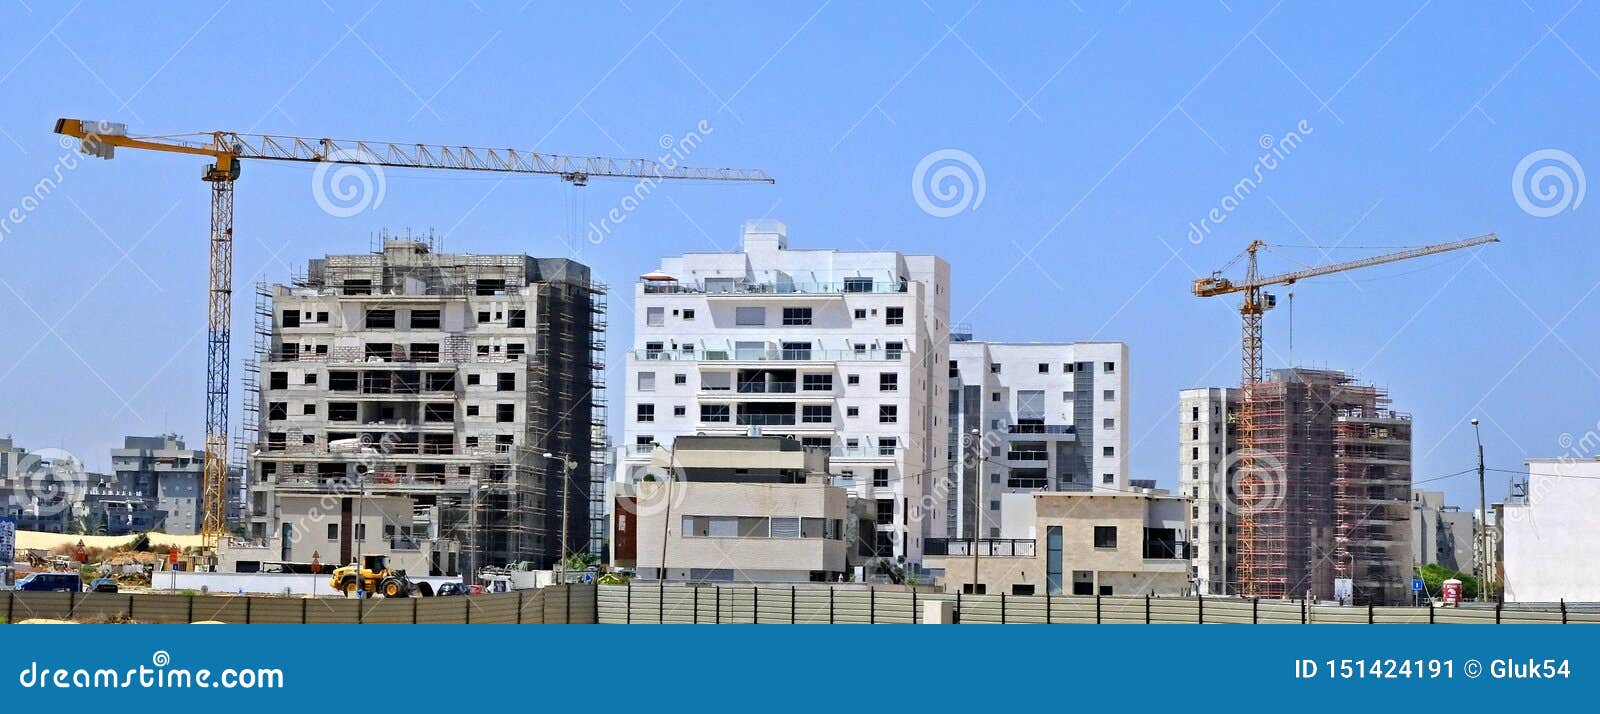 De bouwyard van Woningbouw van huizen op een nieuw gebied van de stad Holon in Isra?l